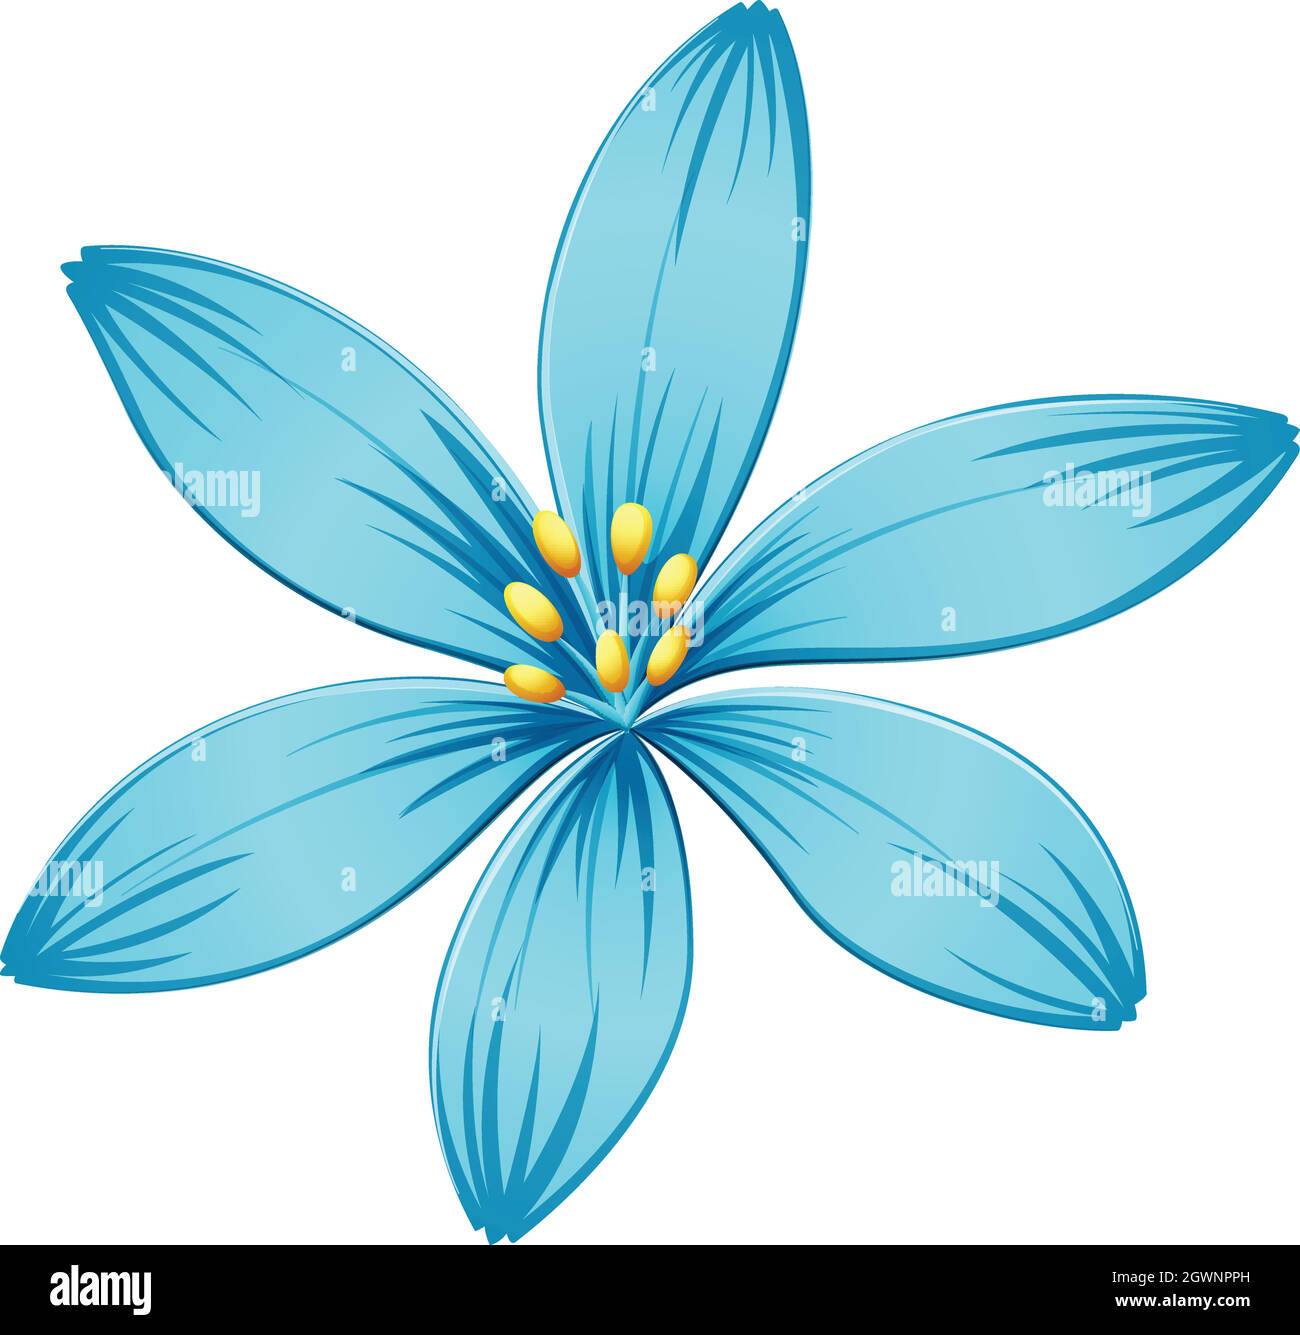 A blue flower Stock Vector